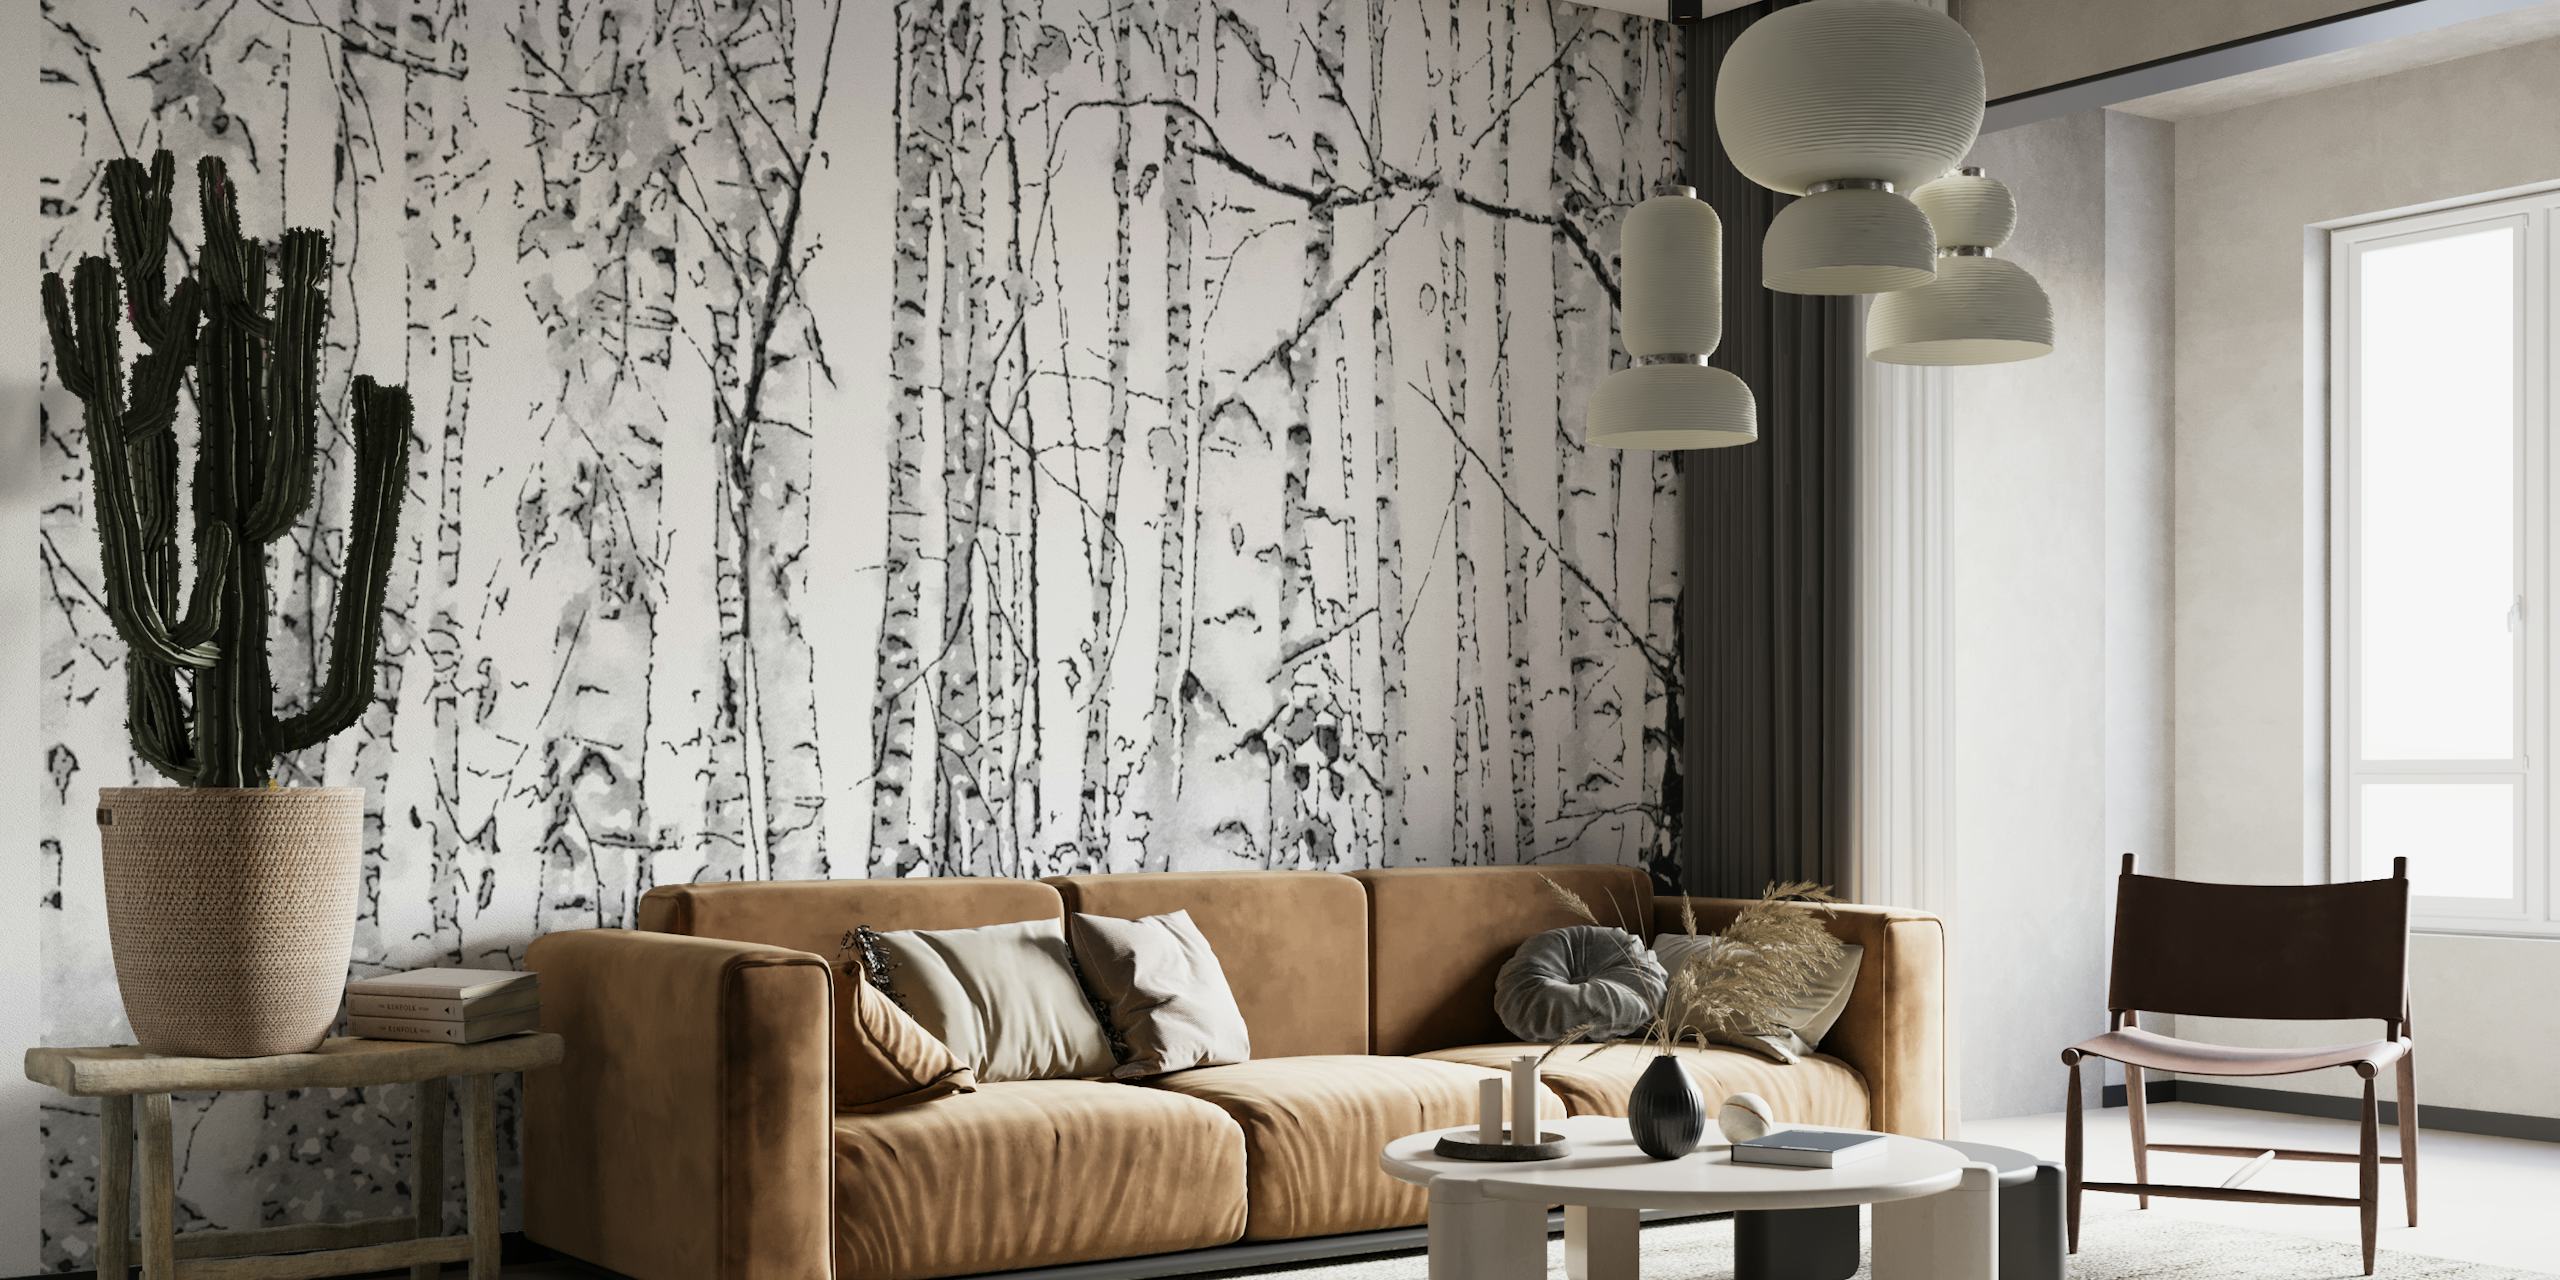 Crno-bijeli zidni mural šume breze koji prikazuje mirnu ljepotu vitkih stabala breze.